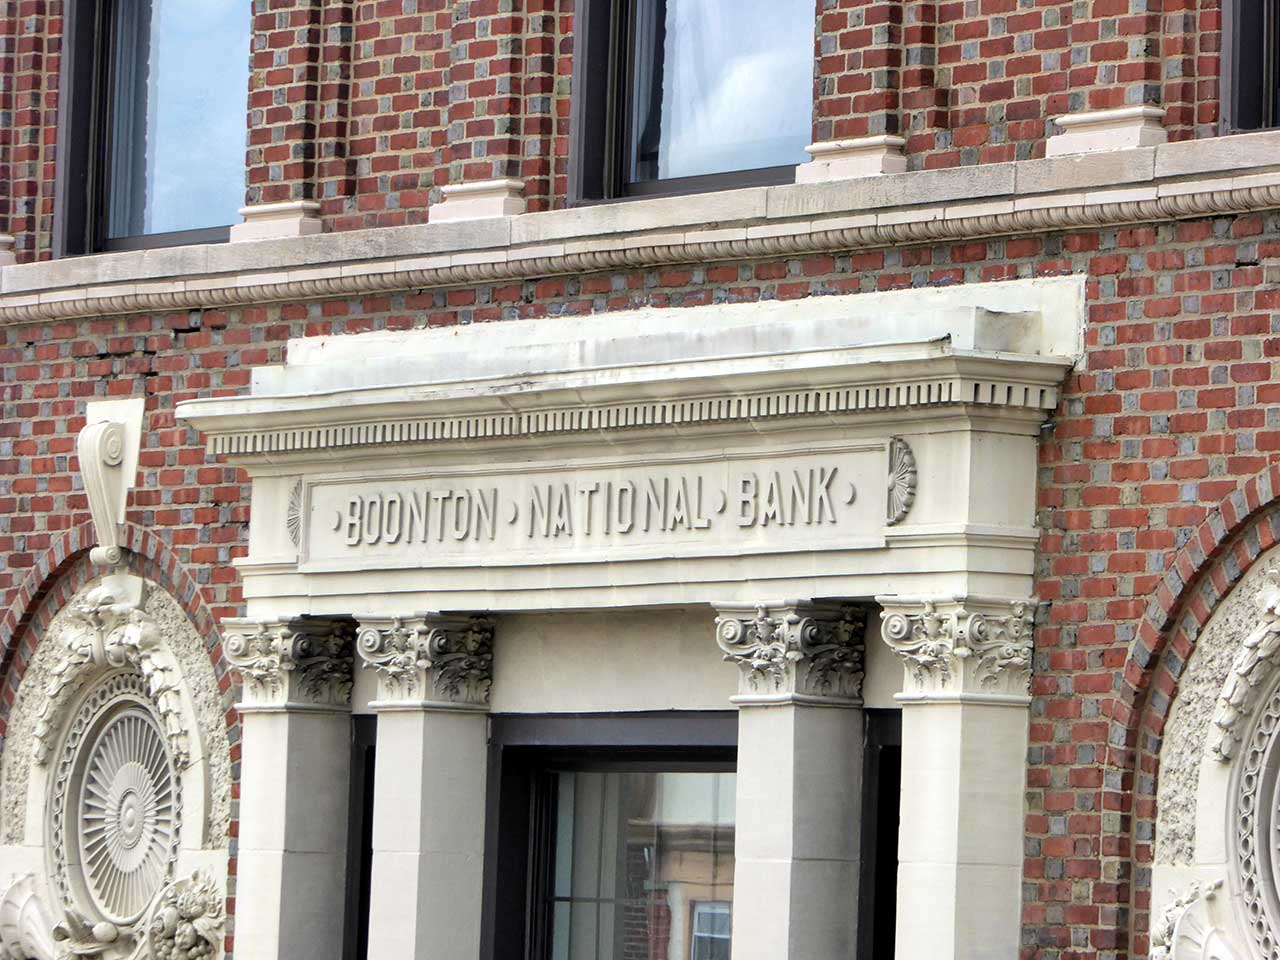 boonton national bank building history